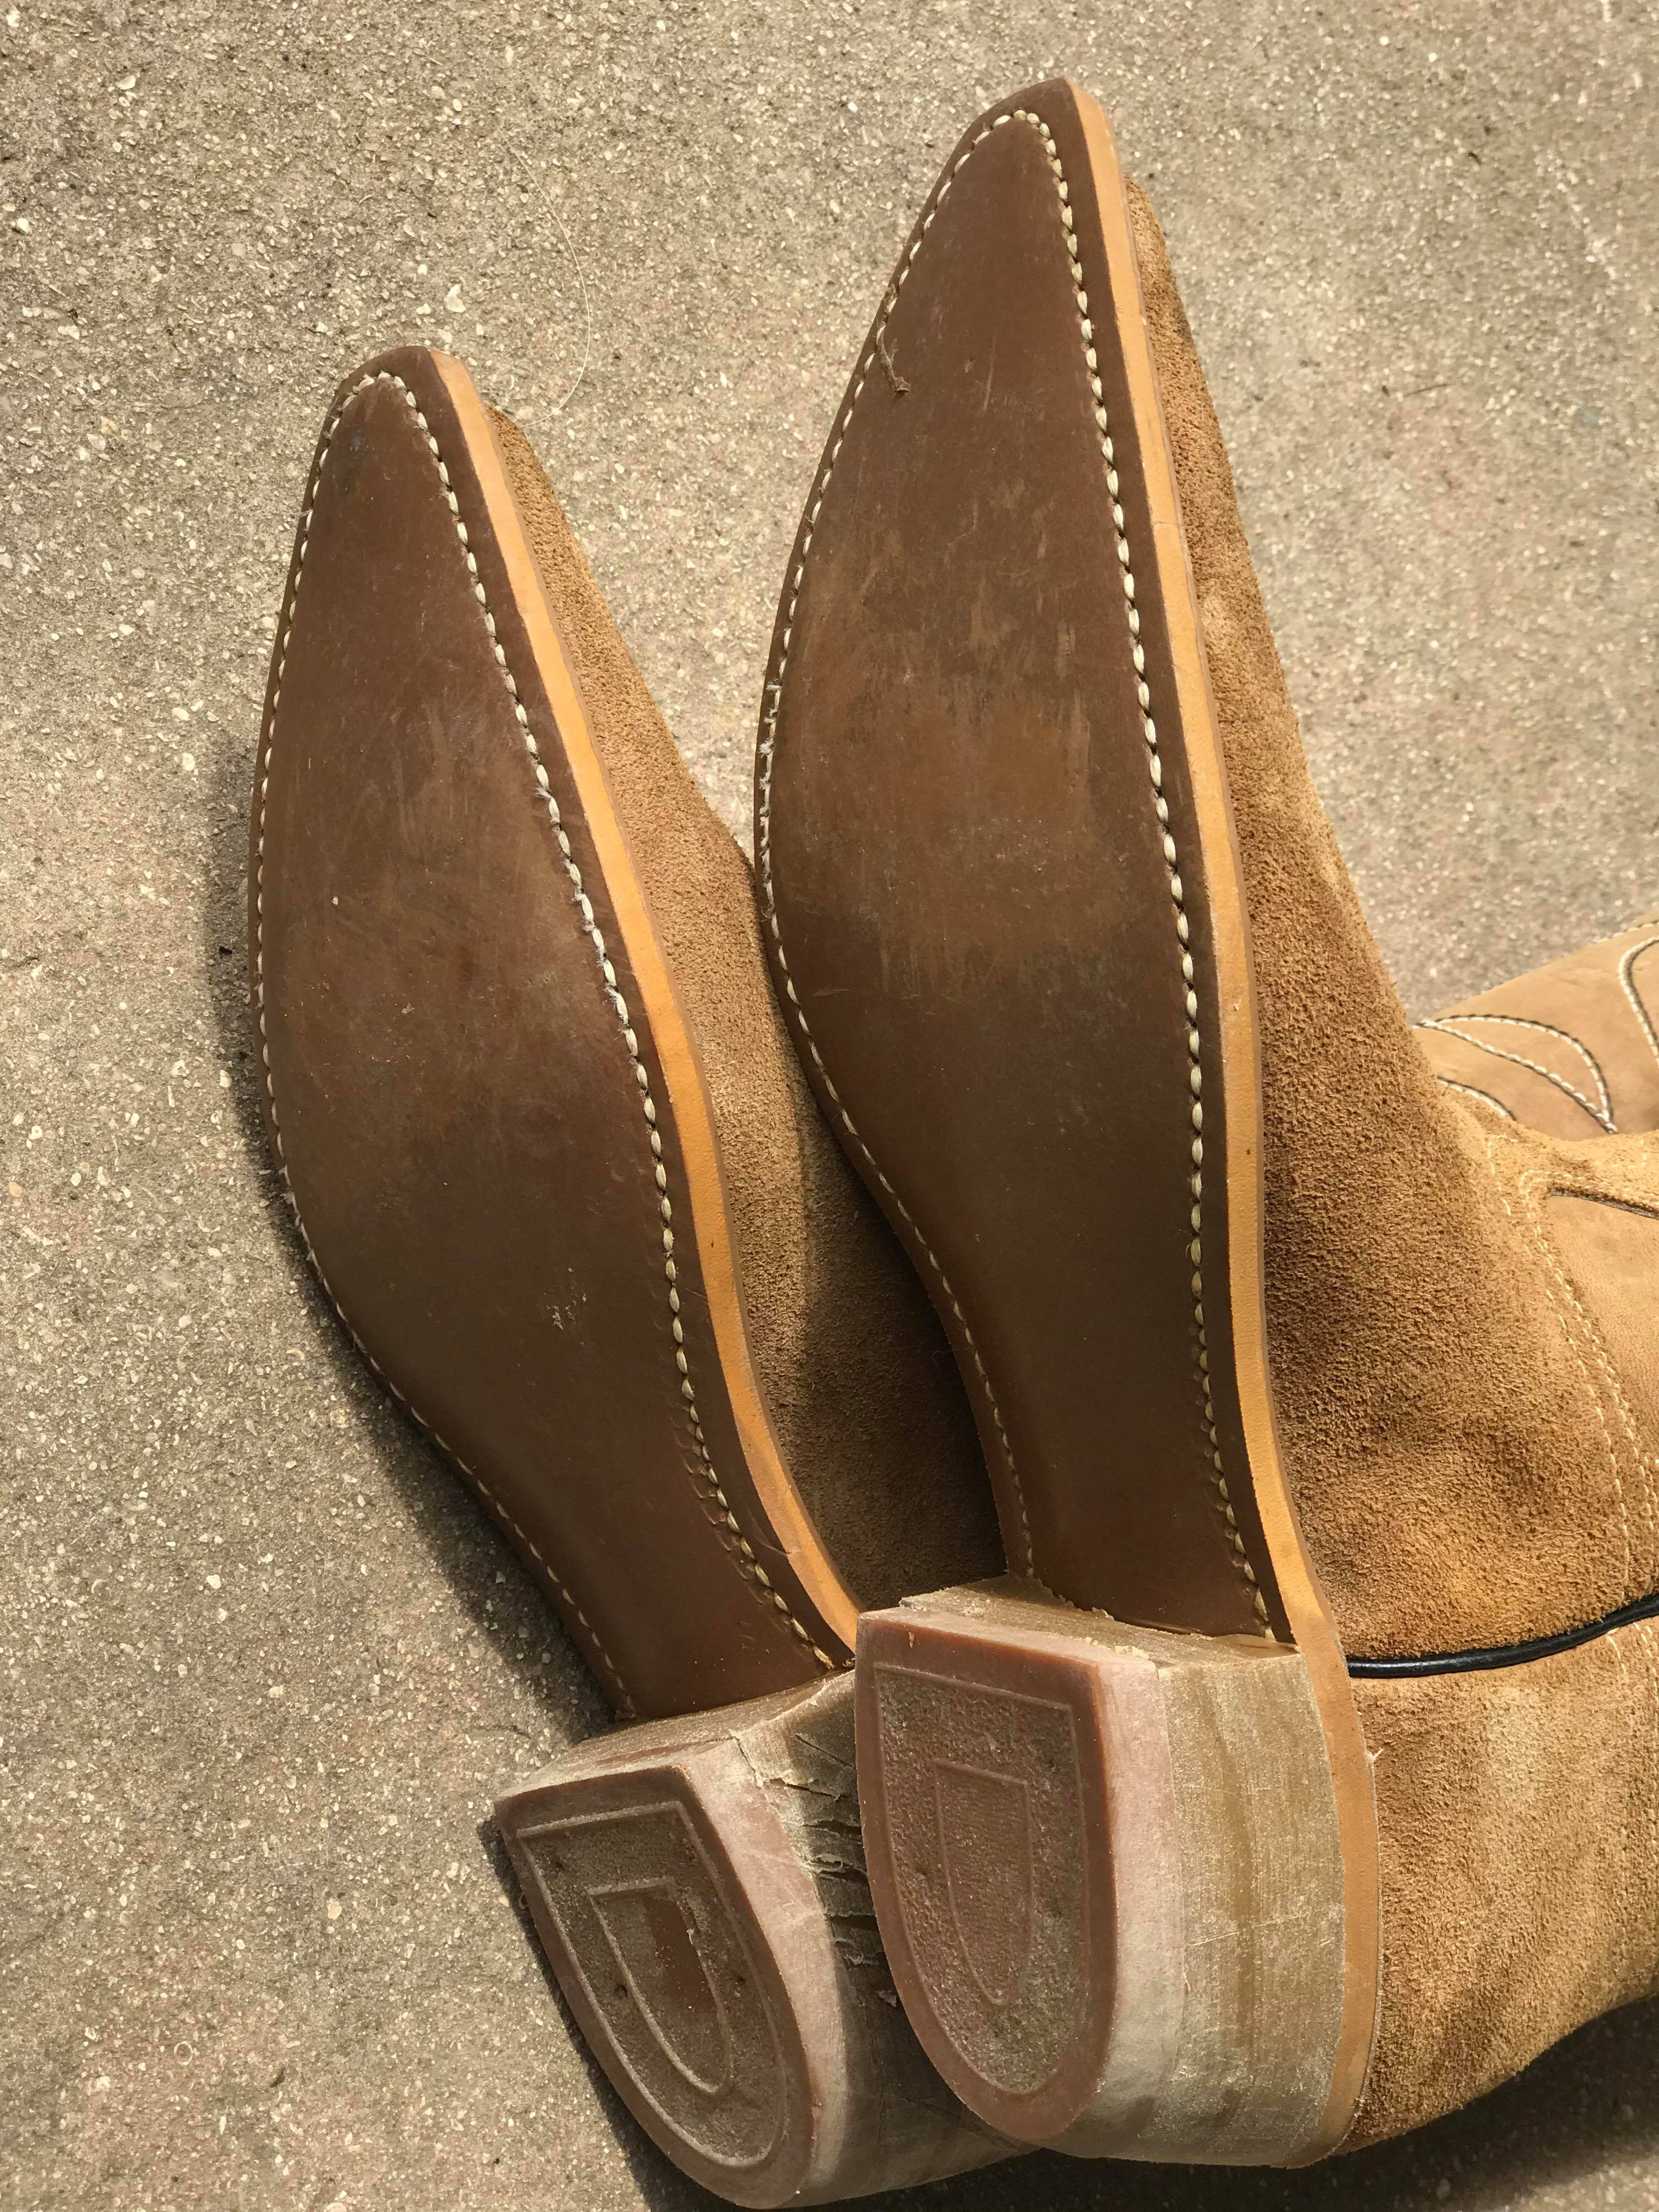 Vintage Men's Cowboy Boots 9.5 D